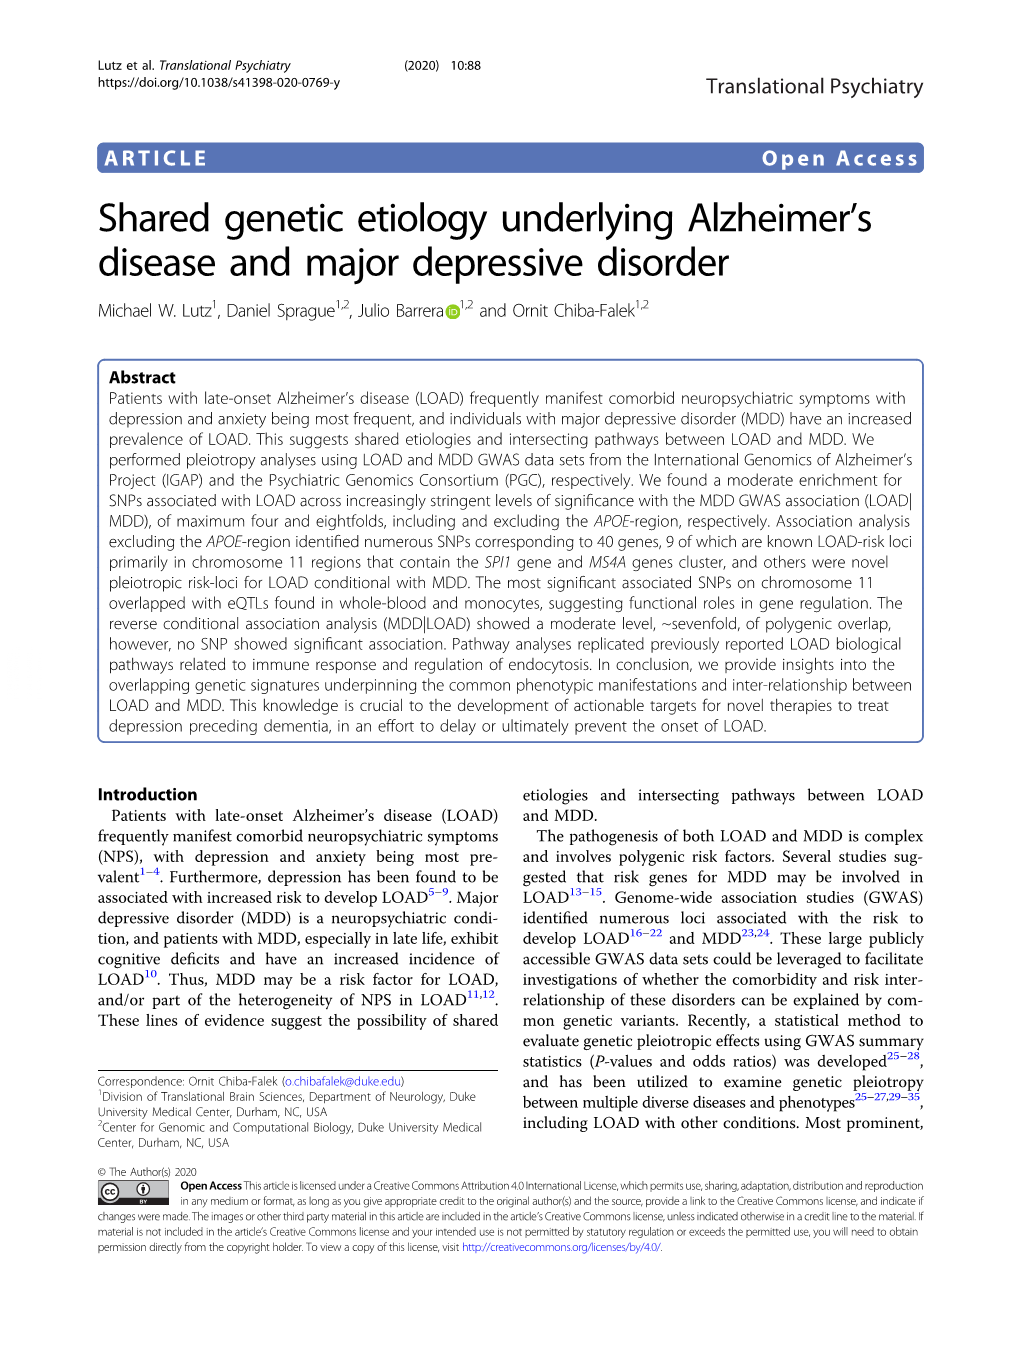 Shared Genetic Etiology Underlying Alzheimer's Disease and Major Depressive Disorder